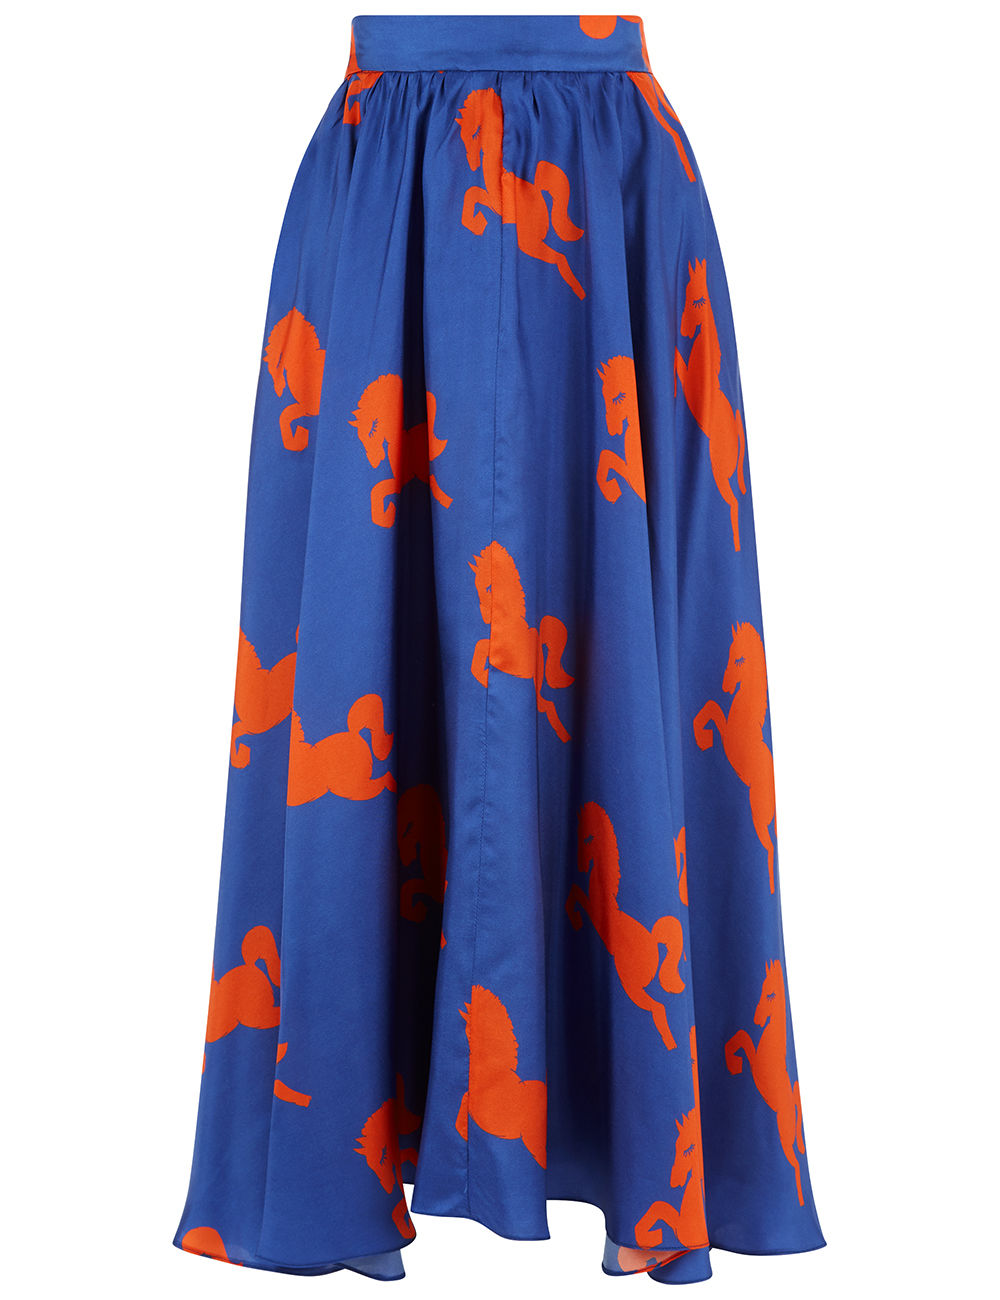  Blue Silk Horse Print Dressage Skirt. MACGRAW. $595. 